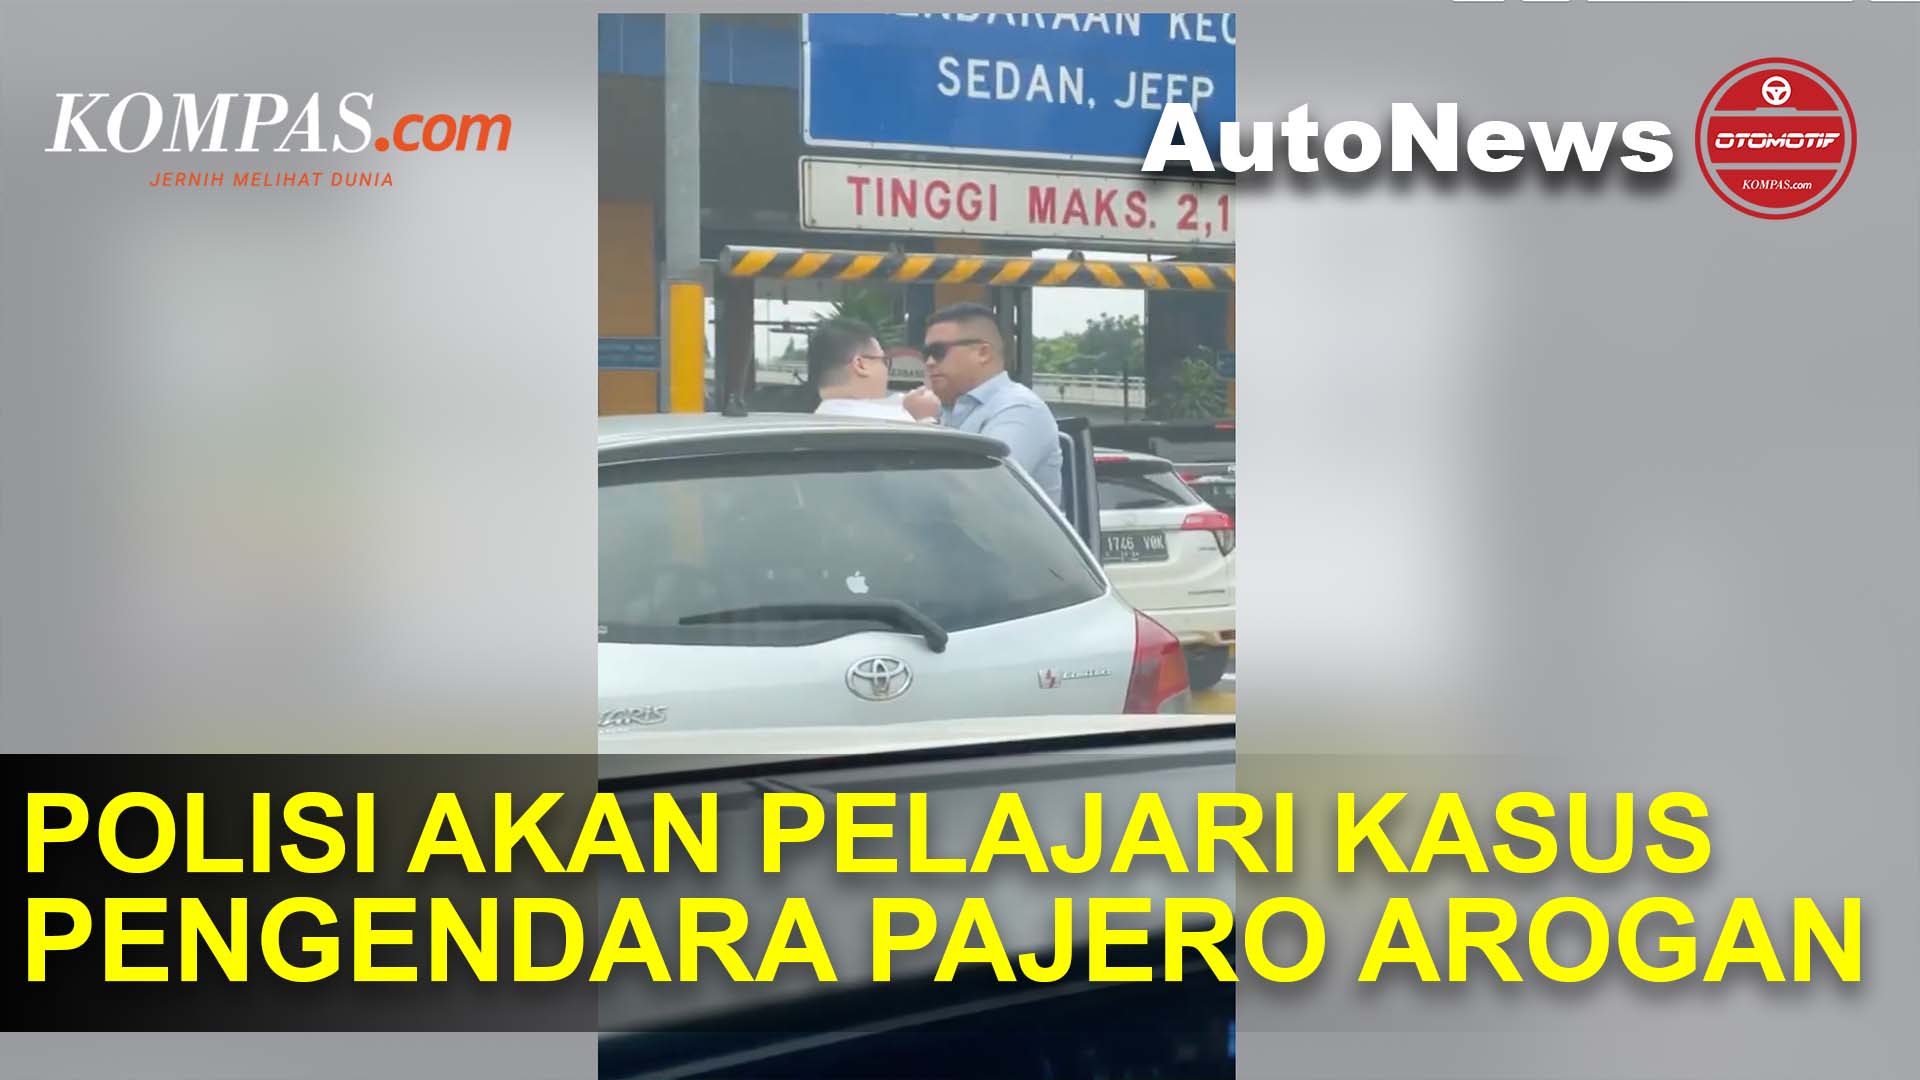 Aksi Sopir Pajero Arogan di Jalan Tol Viral di Media Sosial, Begini Kata Polisi